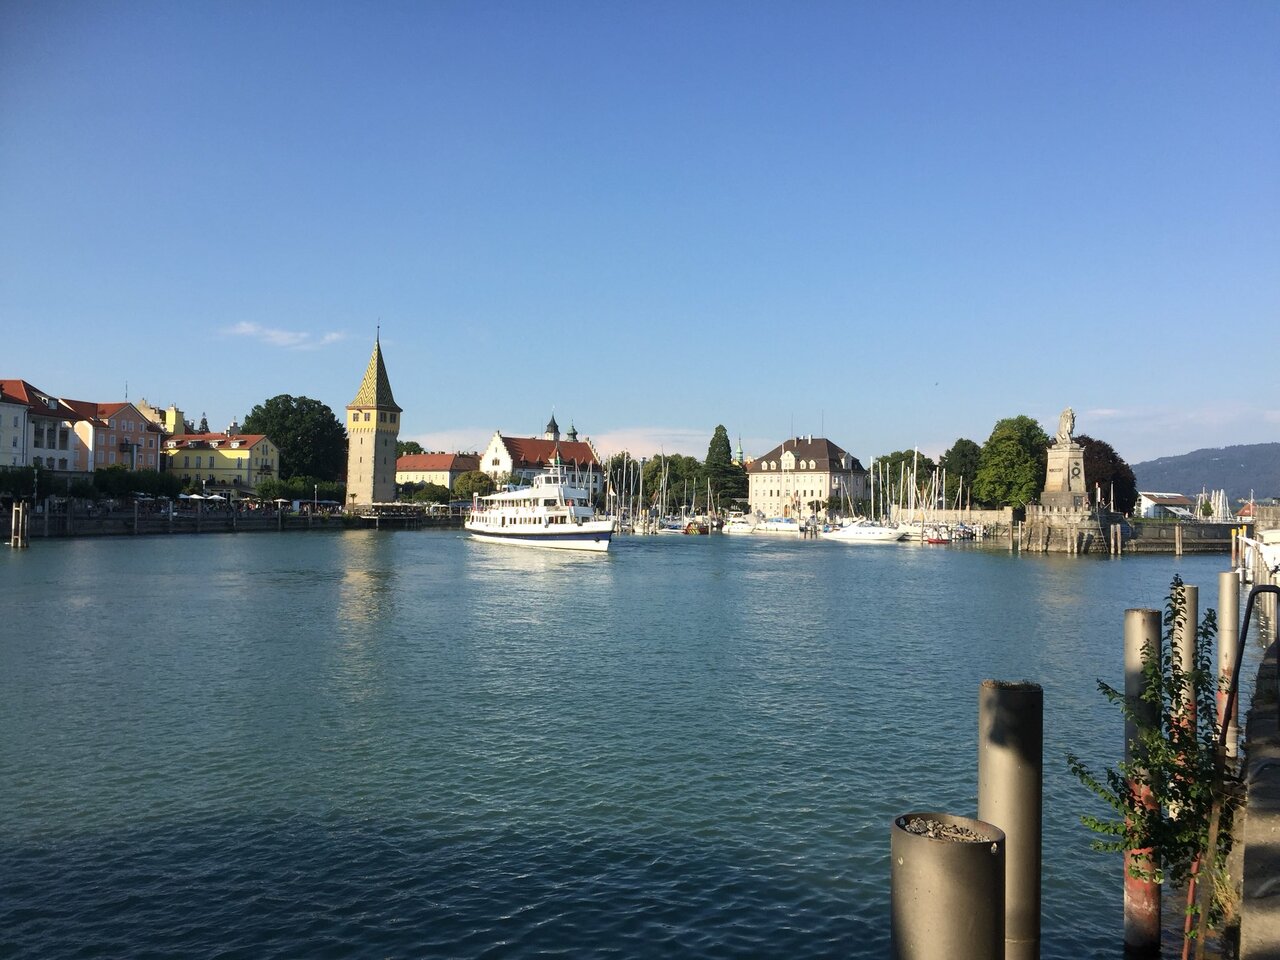 Etappenziel Lindau erreicht und spontan Übernachtung gefunden.  #eifachschön #rundumdenbodensee #lindau #radtour #veloferien https://t.co/uePfxdJblc